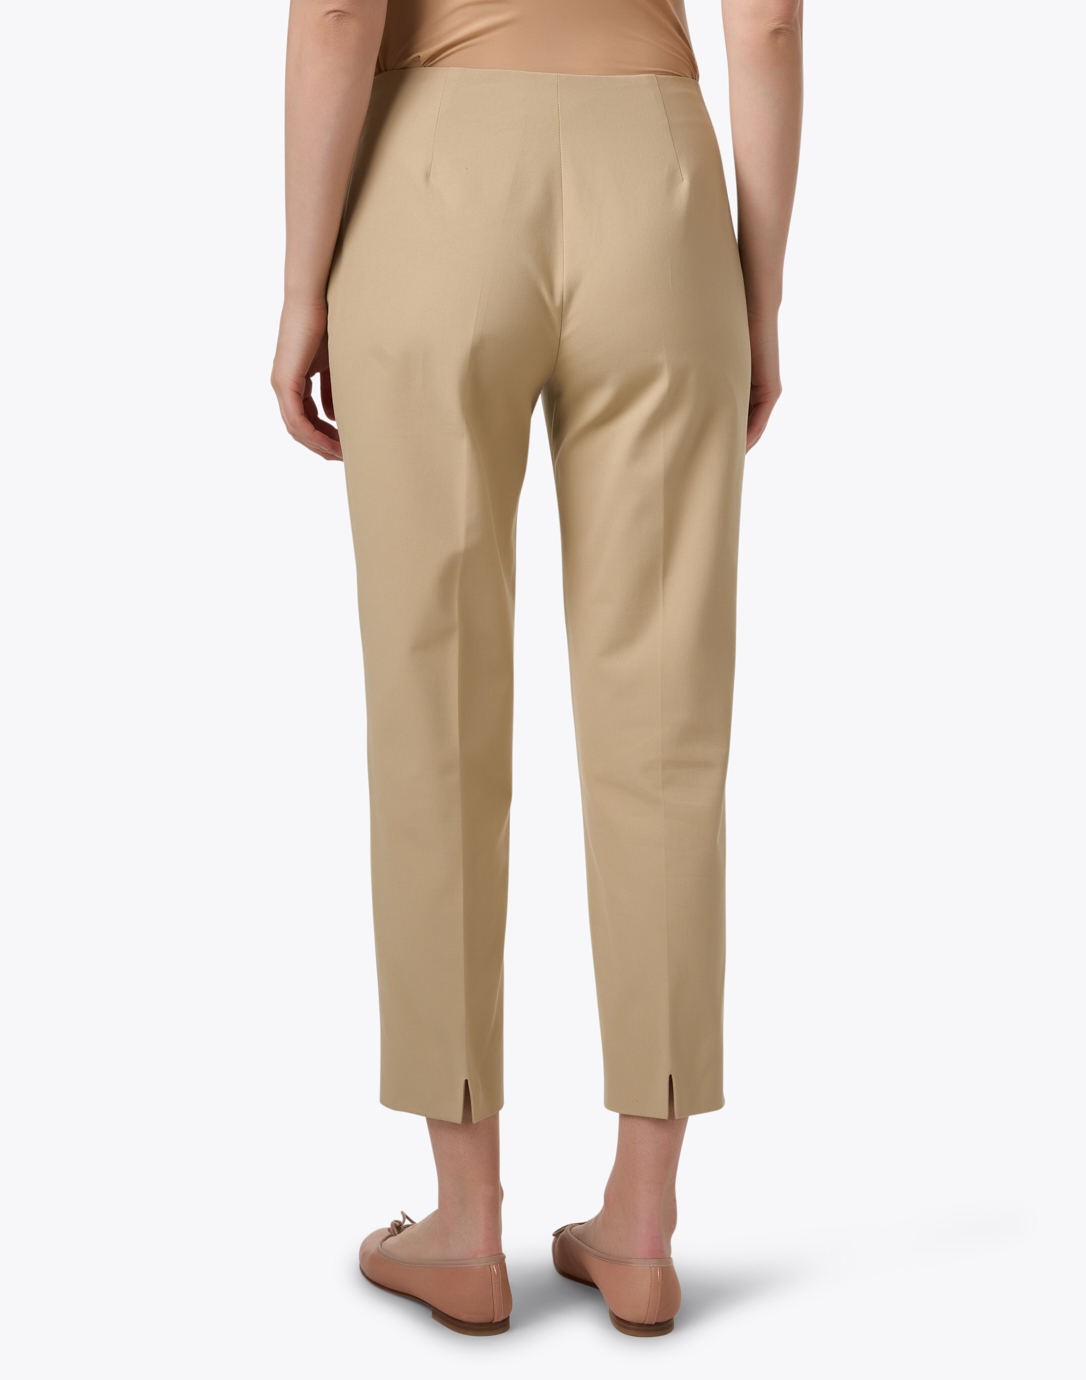 Merona Capri Pants Women's Size 16 Brown Khaki Cropped Pants Stretch